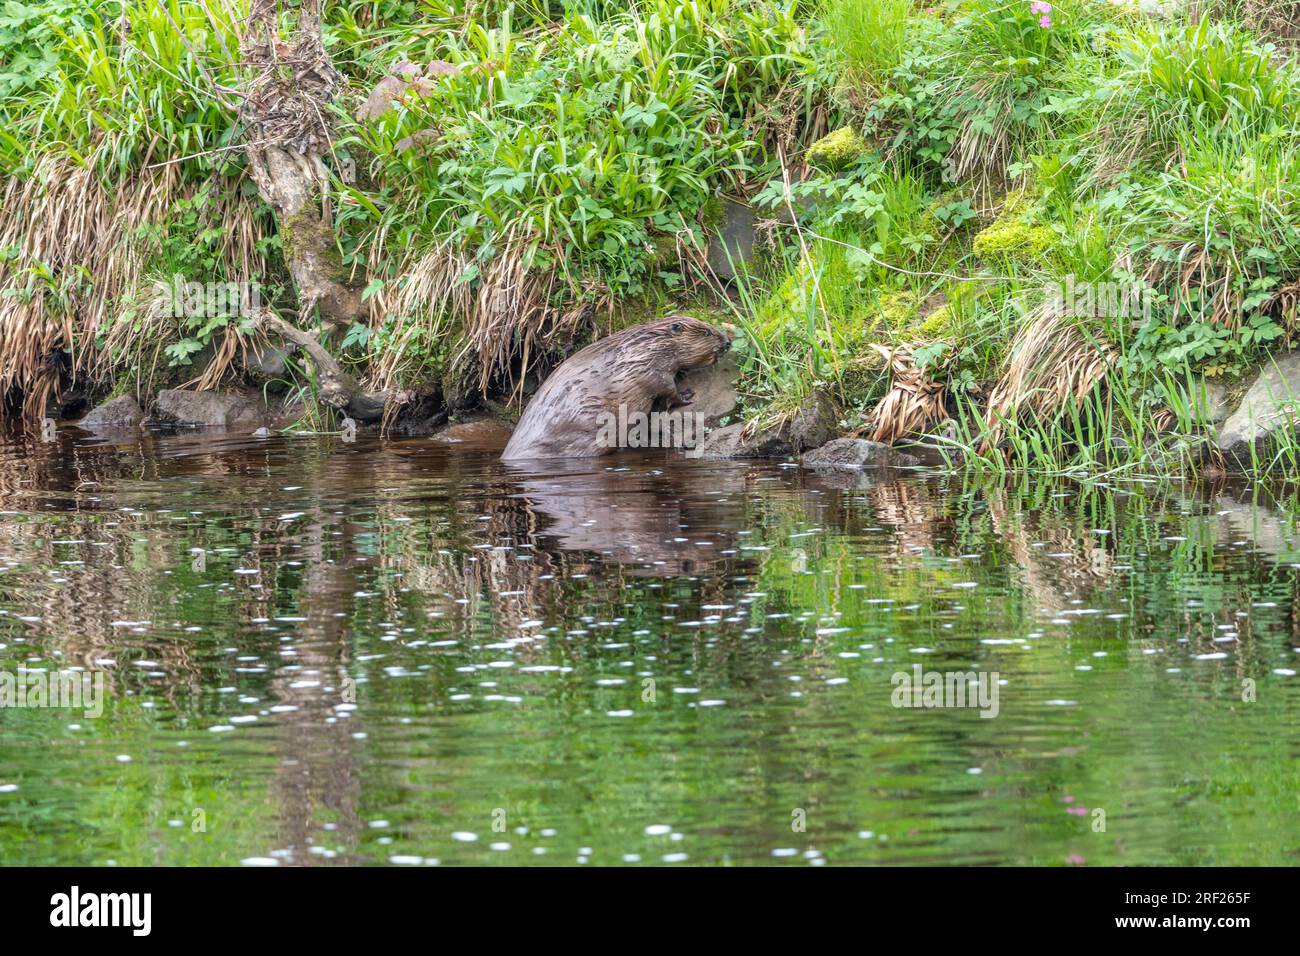 Un castoro (Castor Fibre) che entra nell'acqua sulla riva del fiume Ericht. Foto Stock